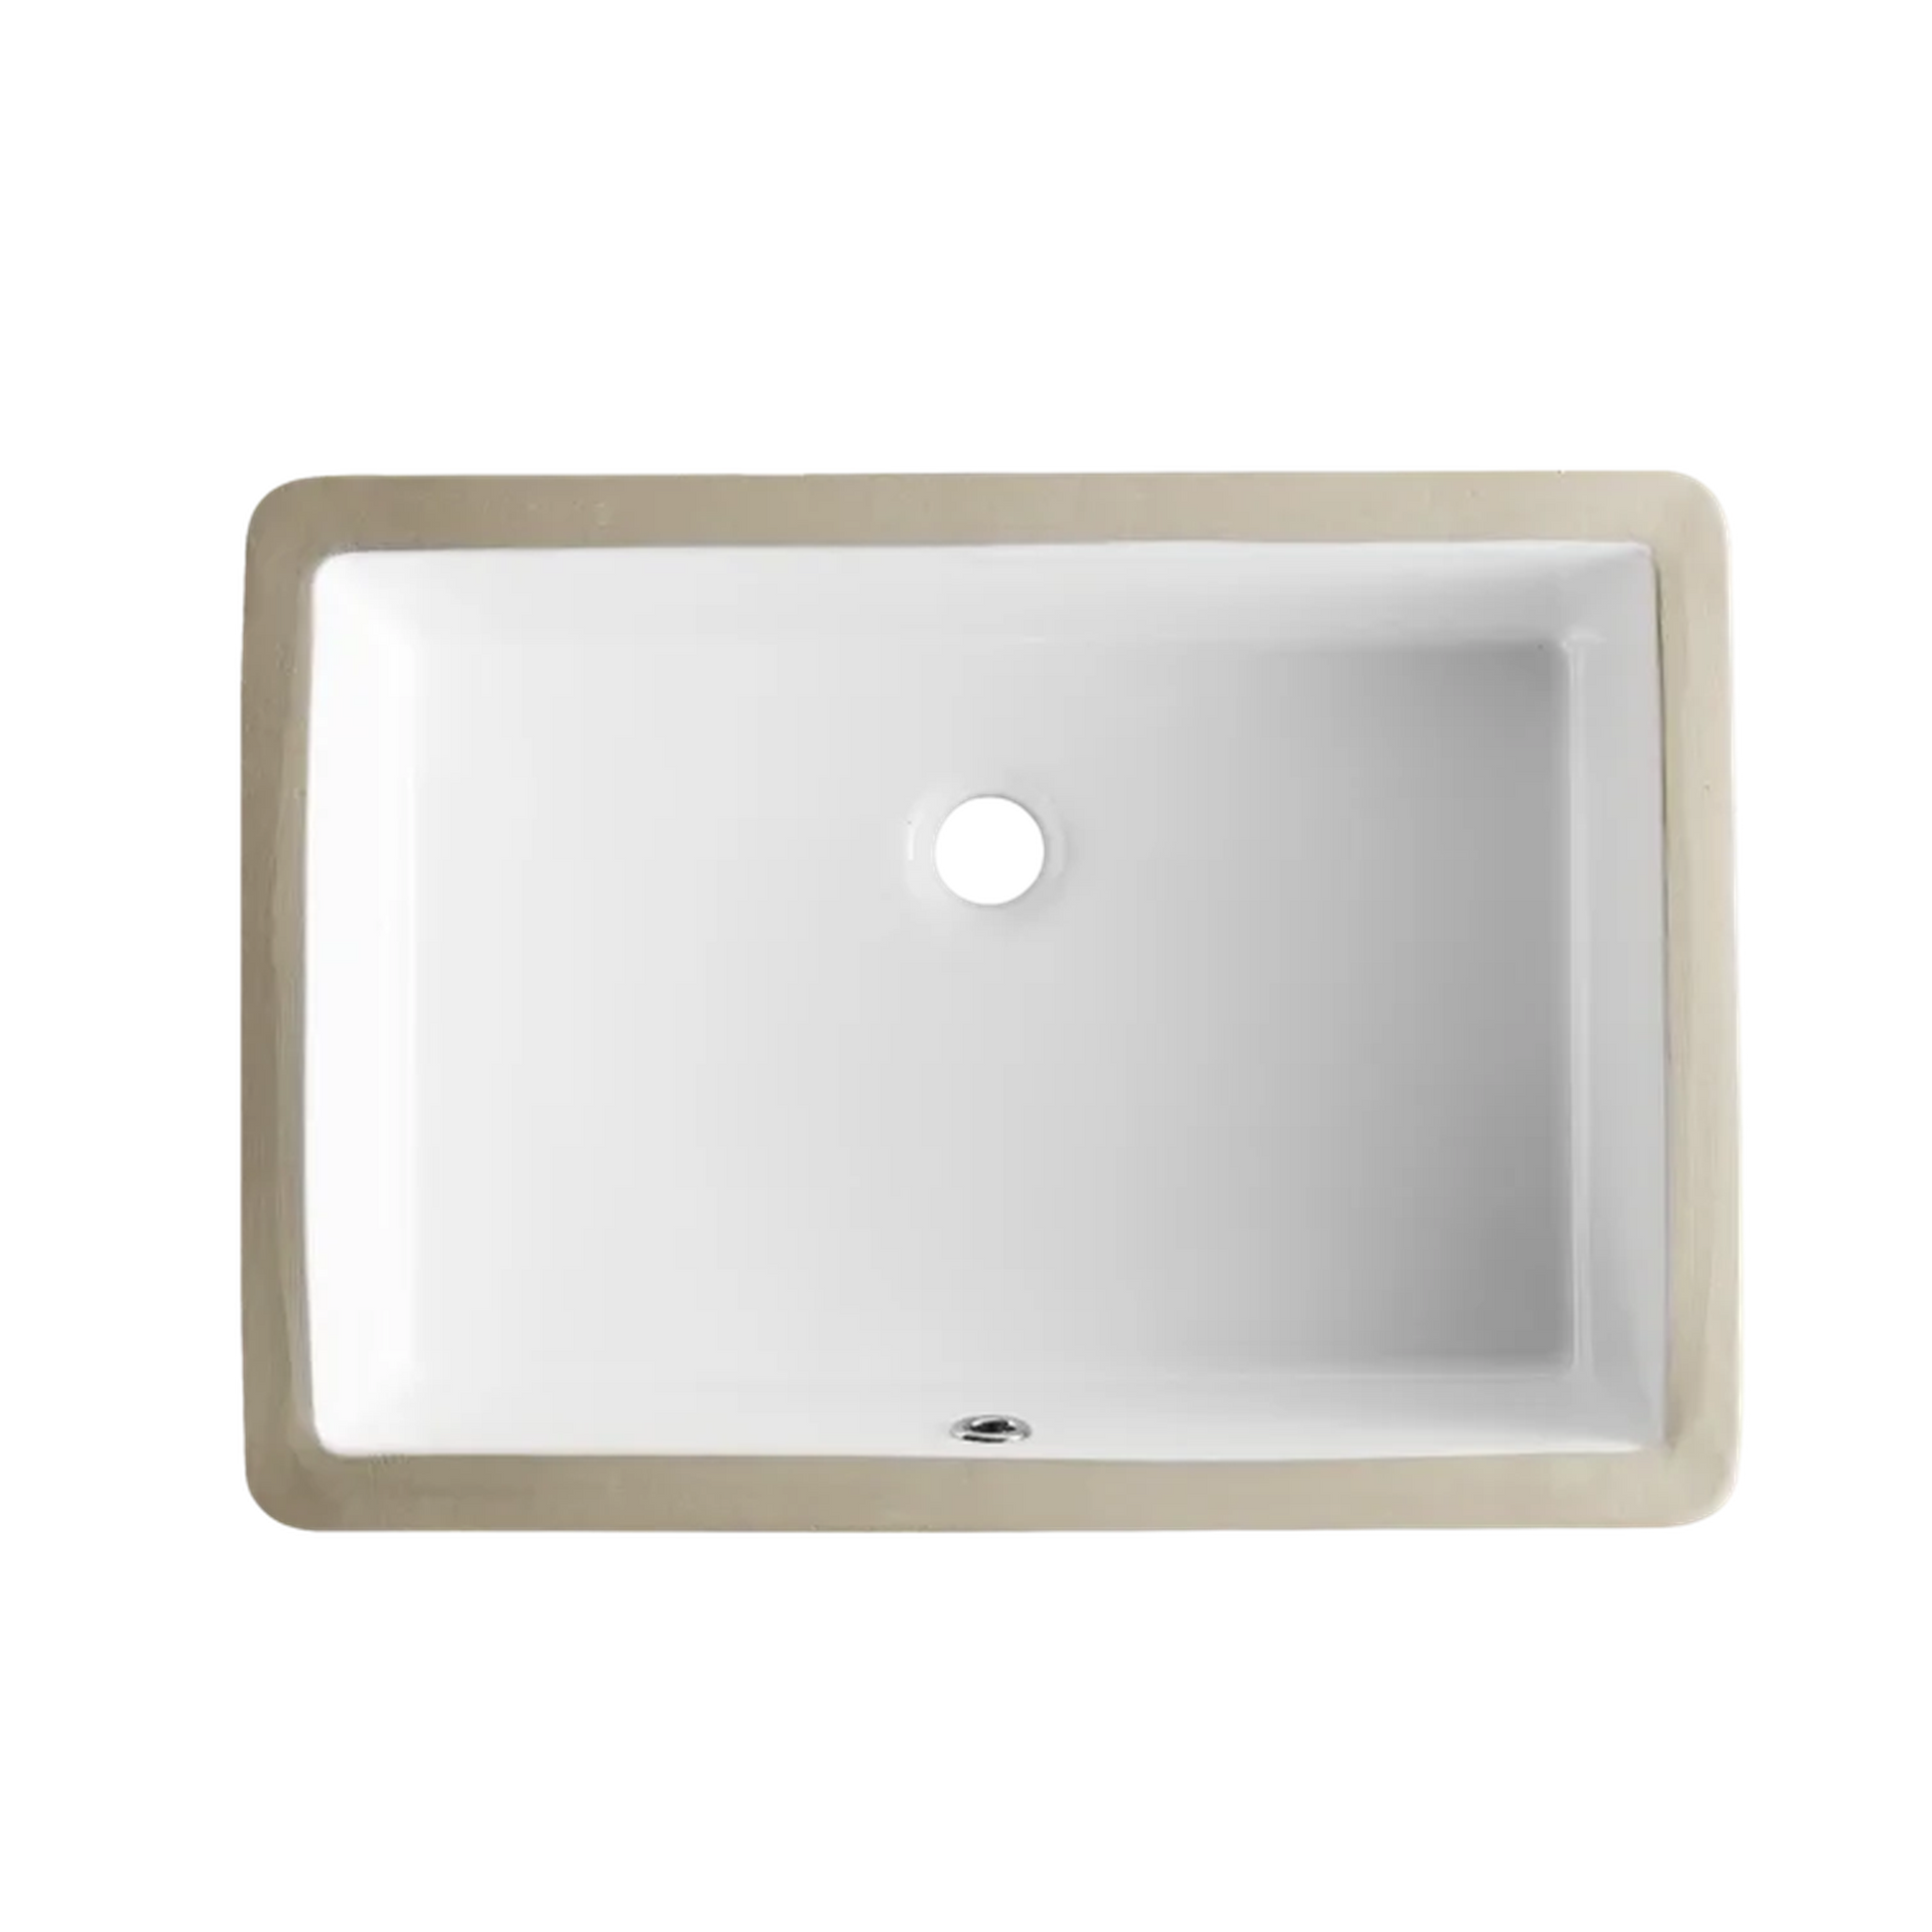 DeerValley Ursa 22" x 16" Rectangular White Undermount Bathroom Sink With Overflow Hole